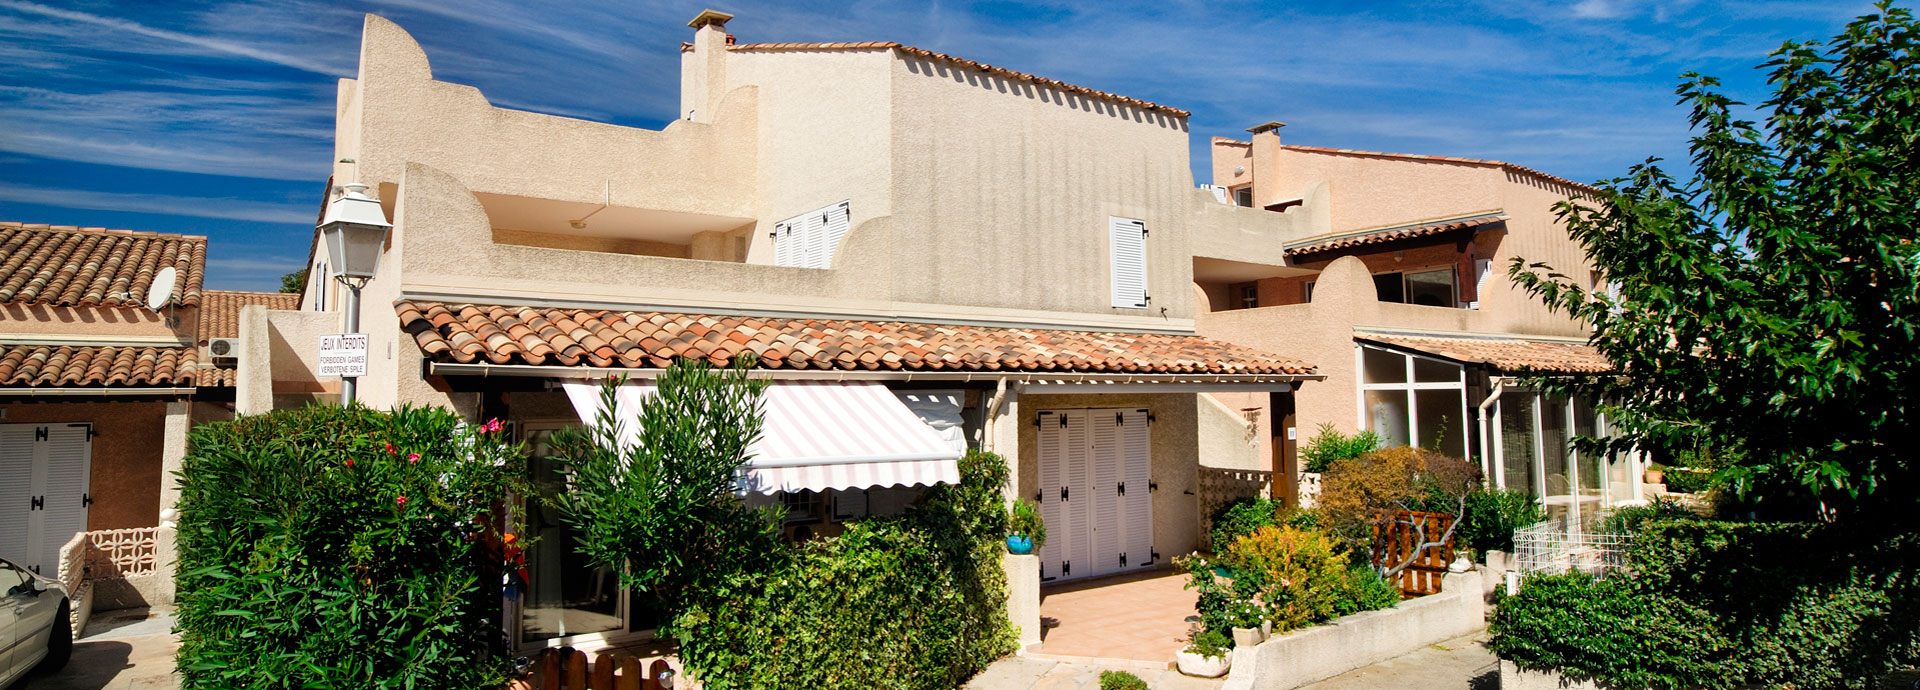 location vacances au Cap d'Agde : résidence Samaria Village